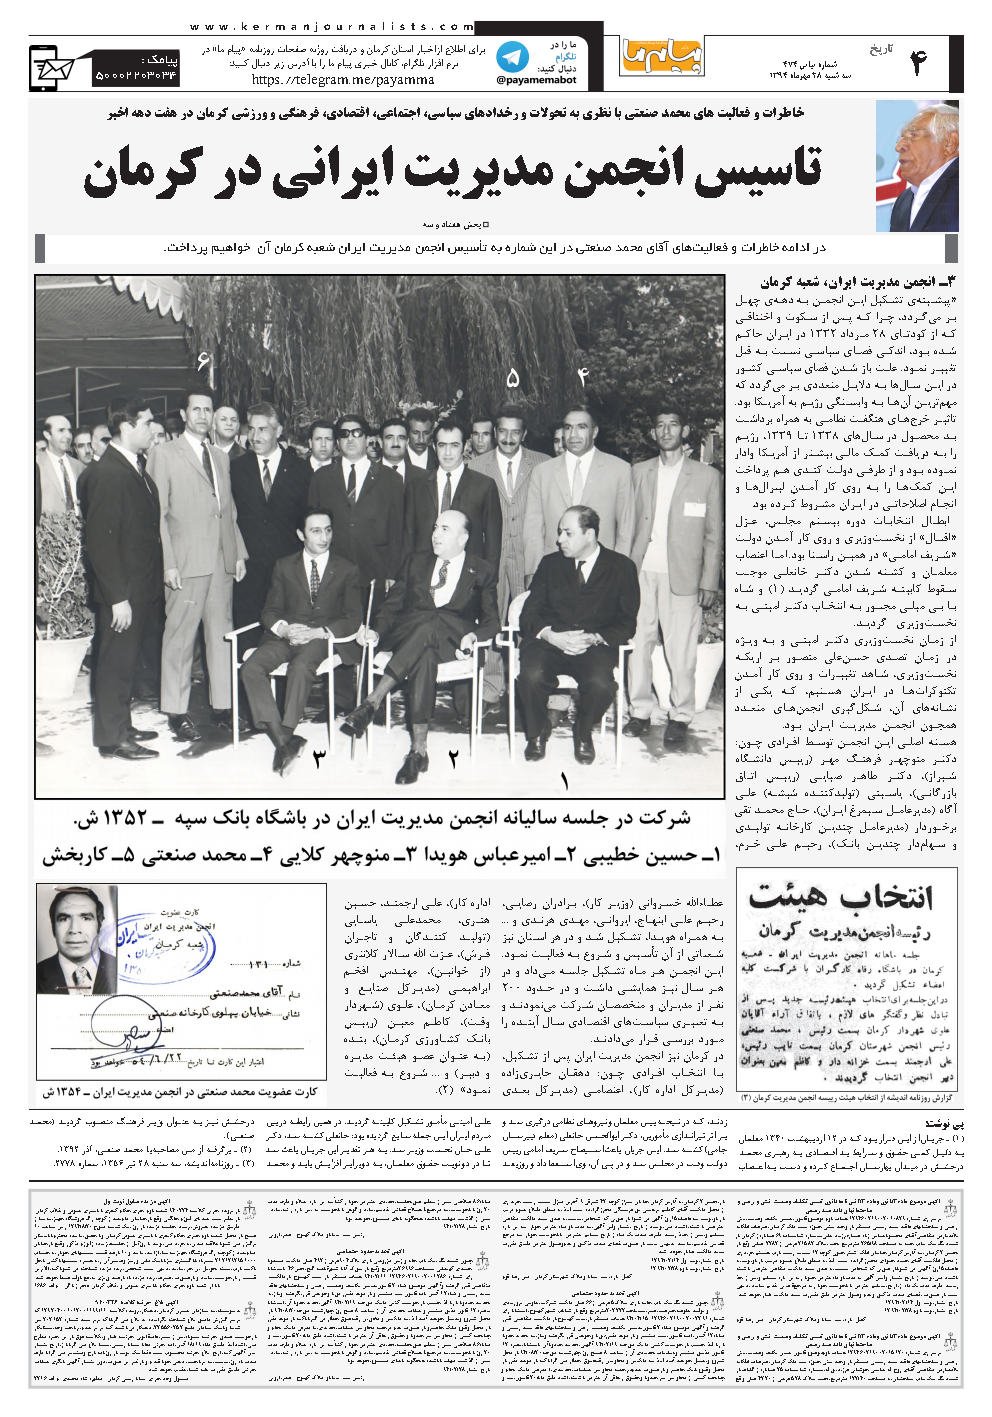 صفحه تاریخ شماره شماره ۴۷۴ روزنامه پیام ما